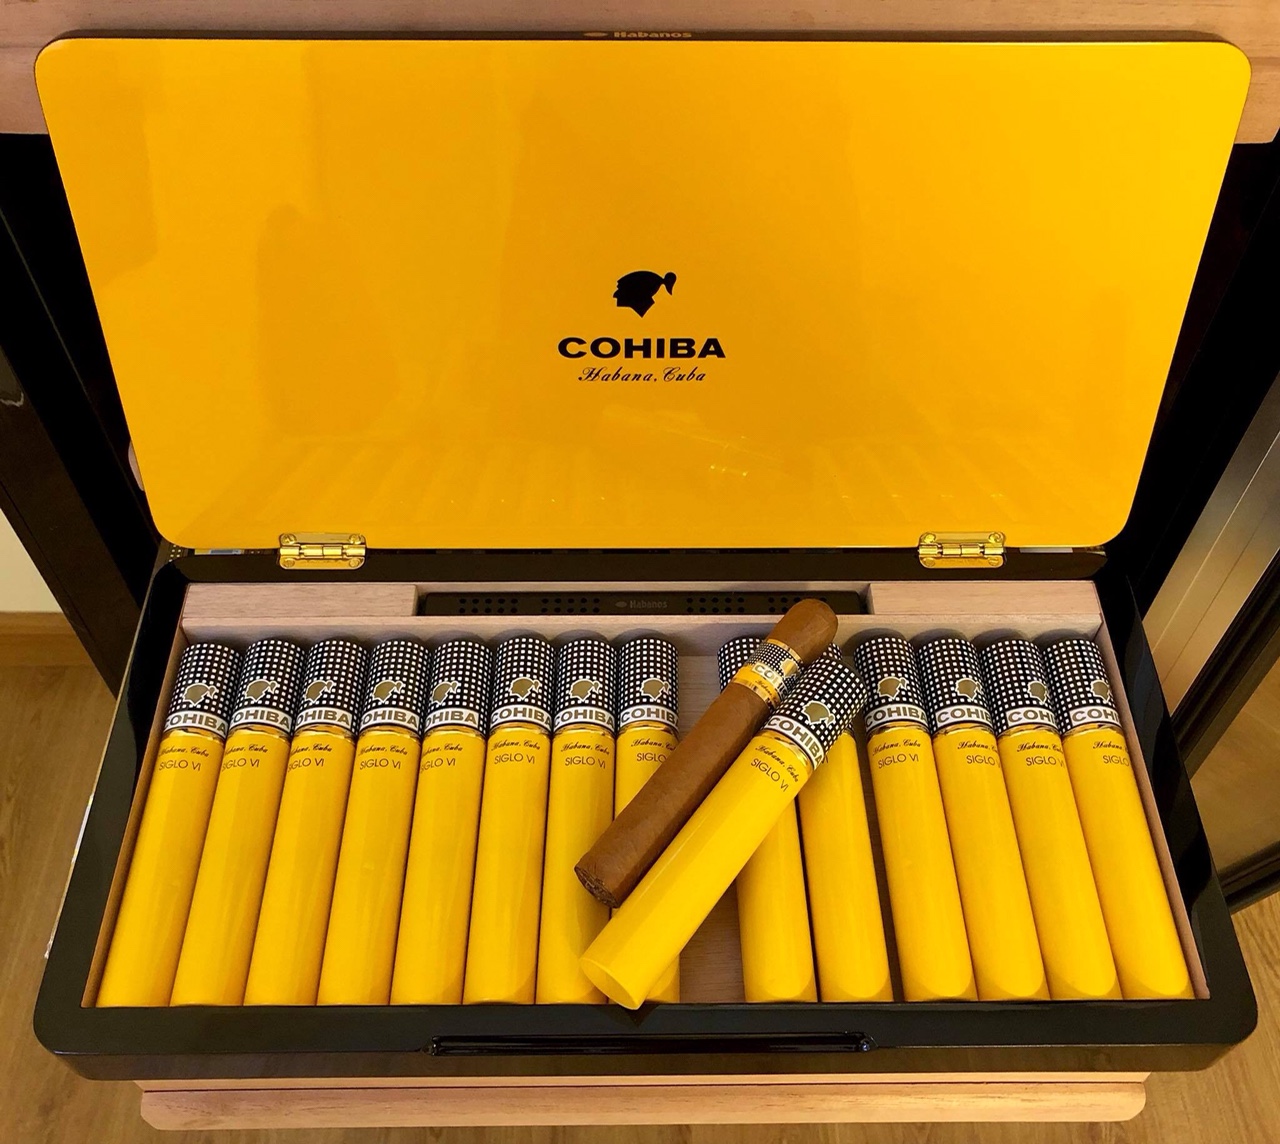 Có gì trong hộp xì gà sản xuất bằng tay Siglo 6 hộp 15 điếu?